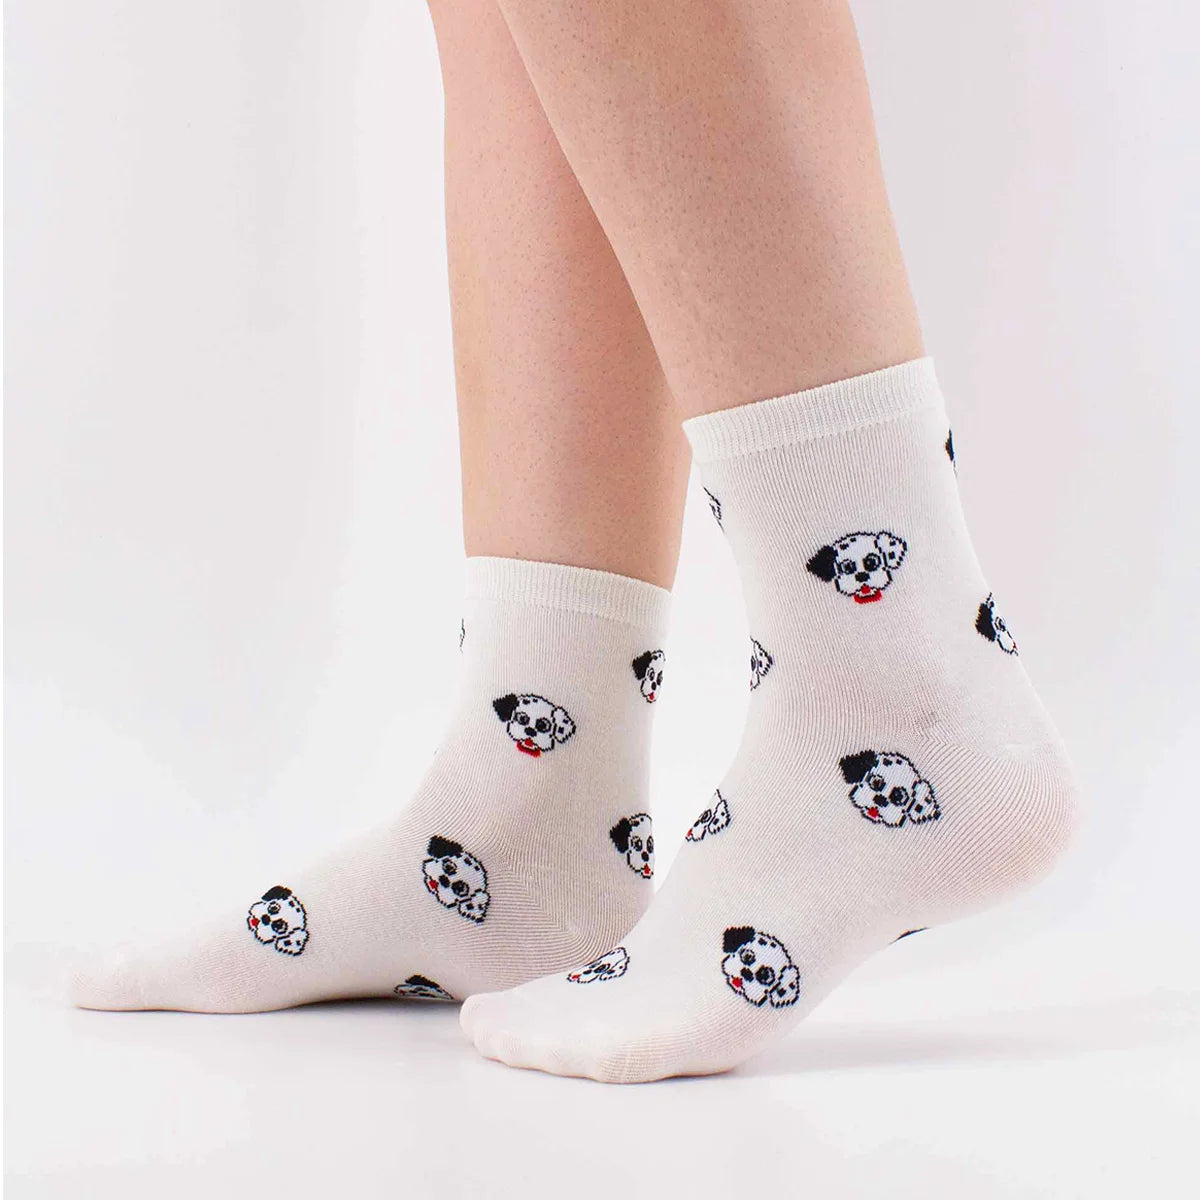 Chaussettes adultes en coton blanches avec des têtes de dalmatien dessus | Chaussettes douces et respirantes | Un excellent choix pour les adultes qui aiment les dalmatiens |